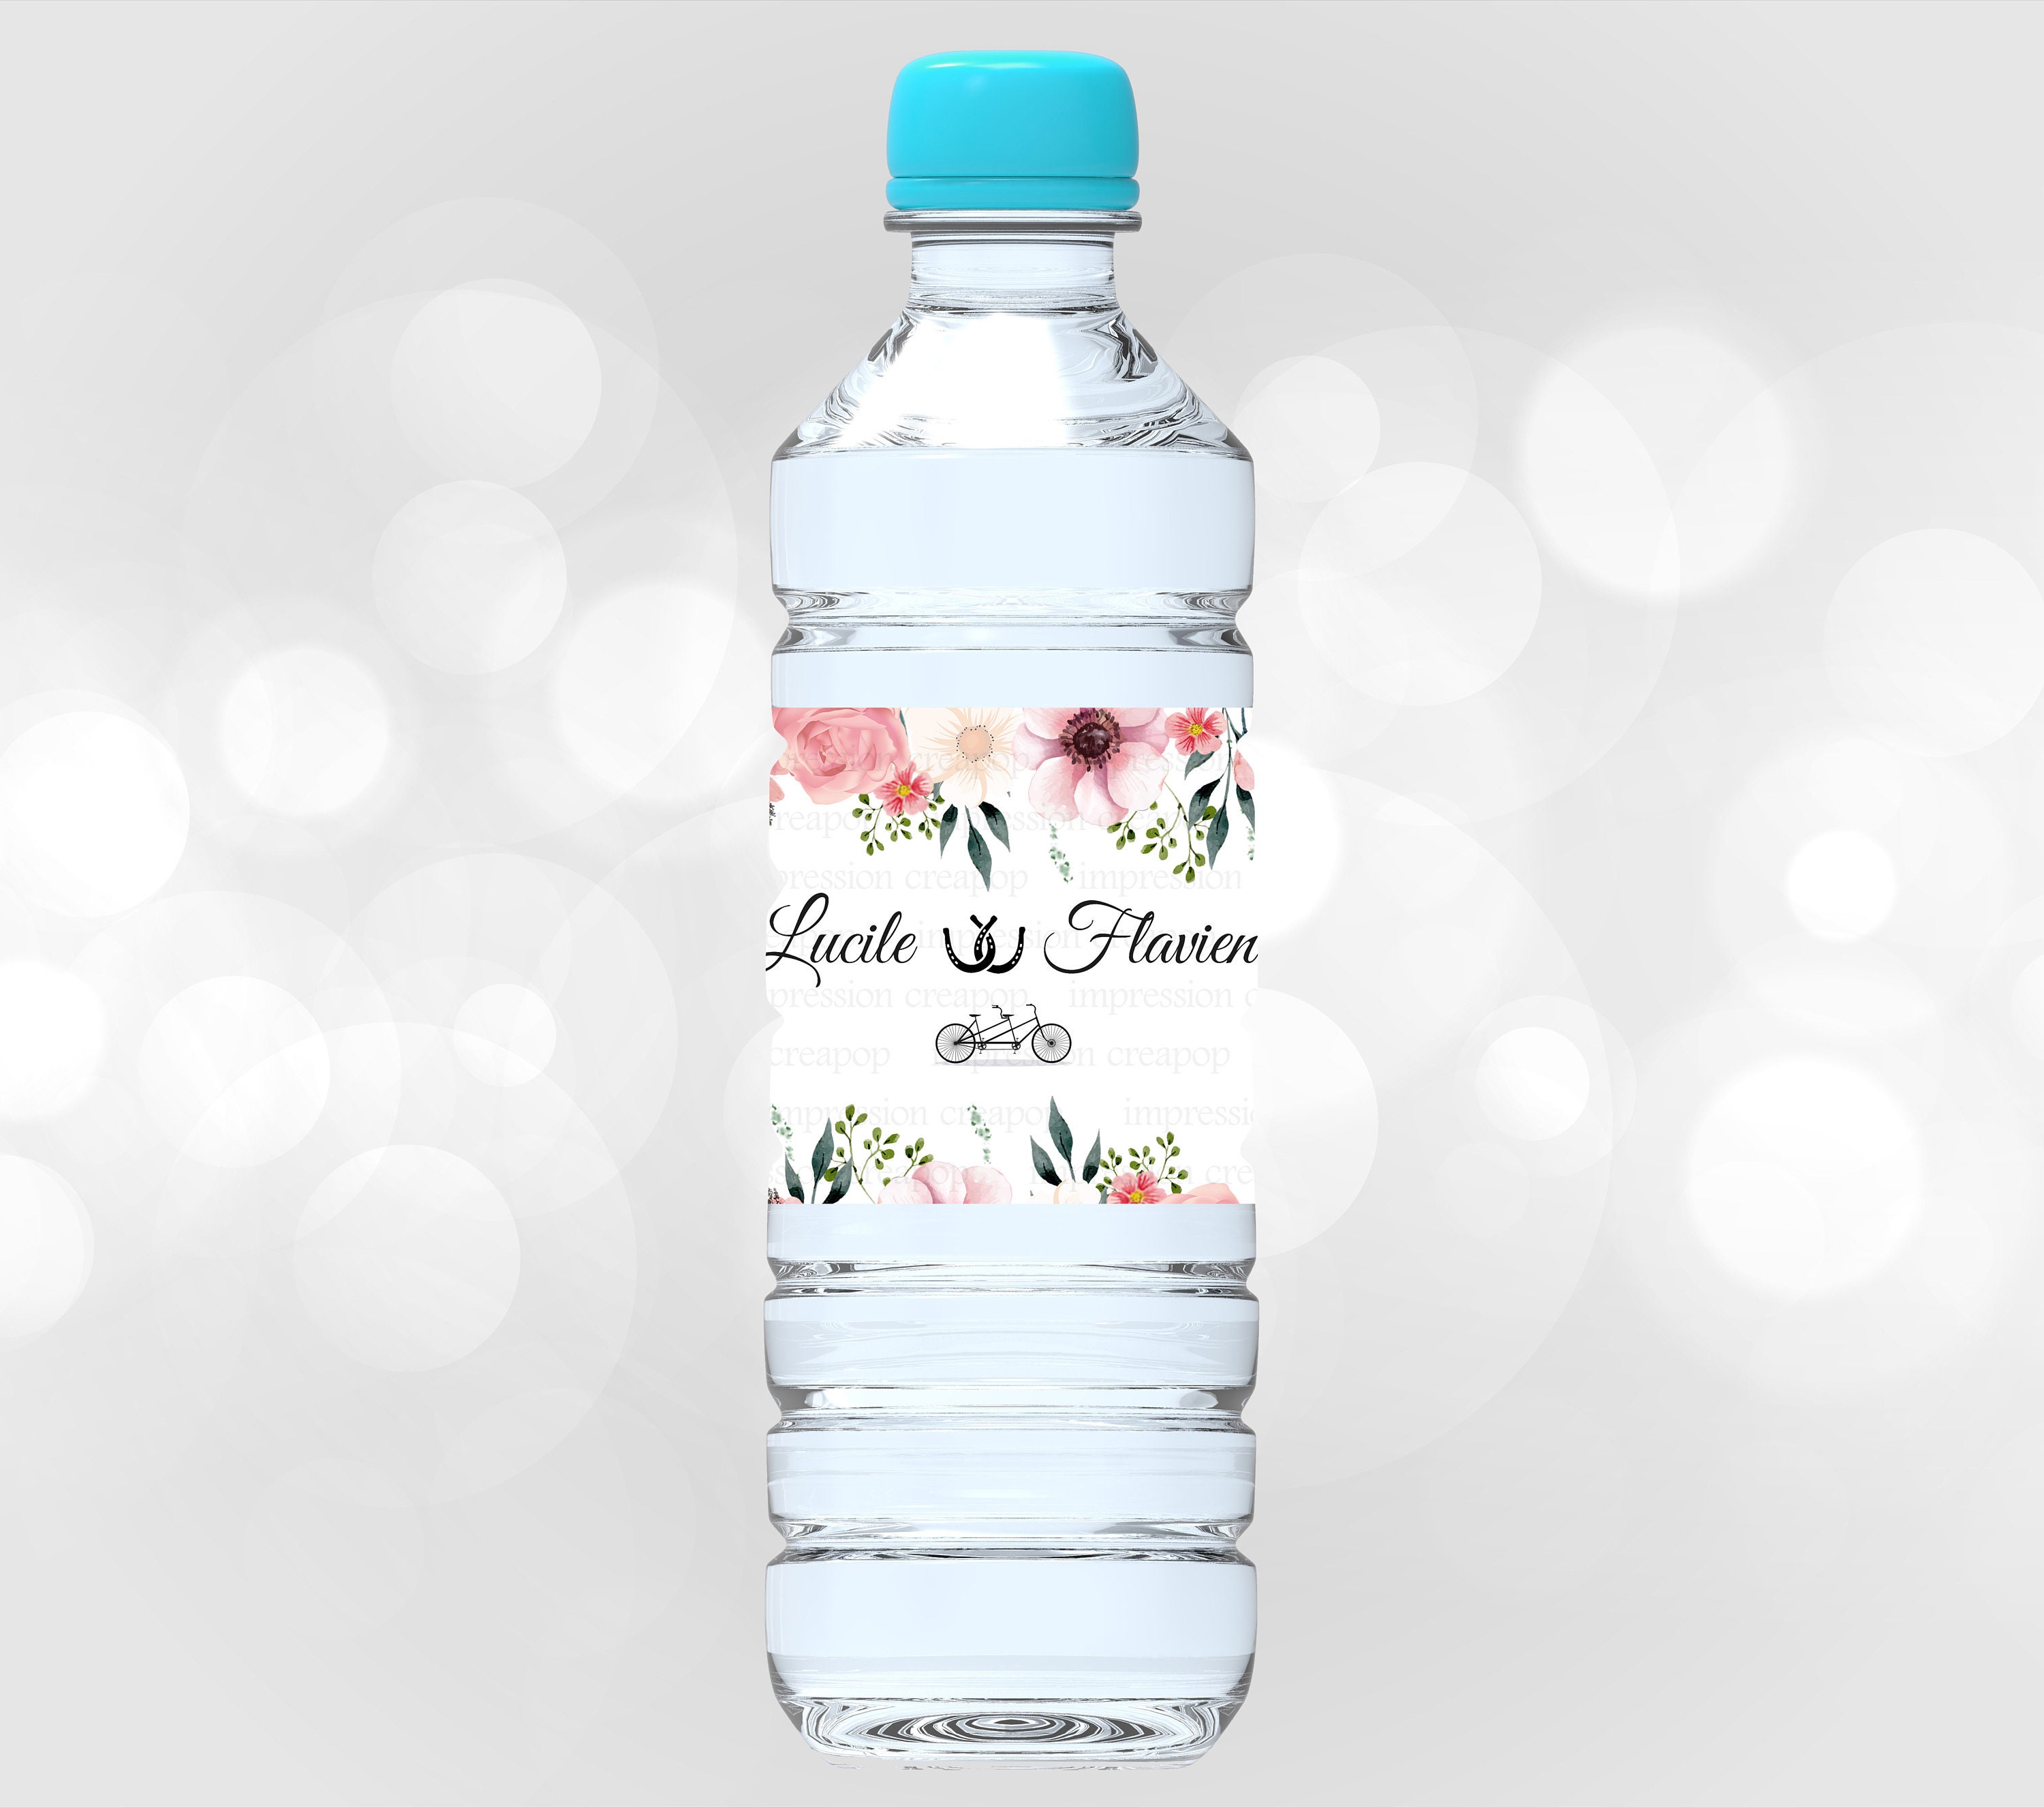 Etiquettes autocollantes pour bouteilles personnalisés mariage floral